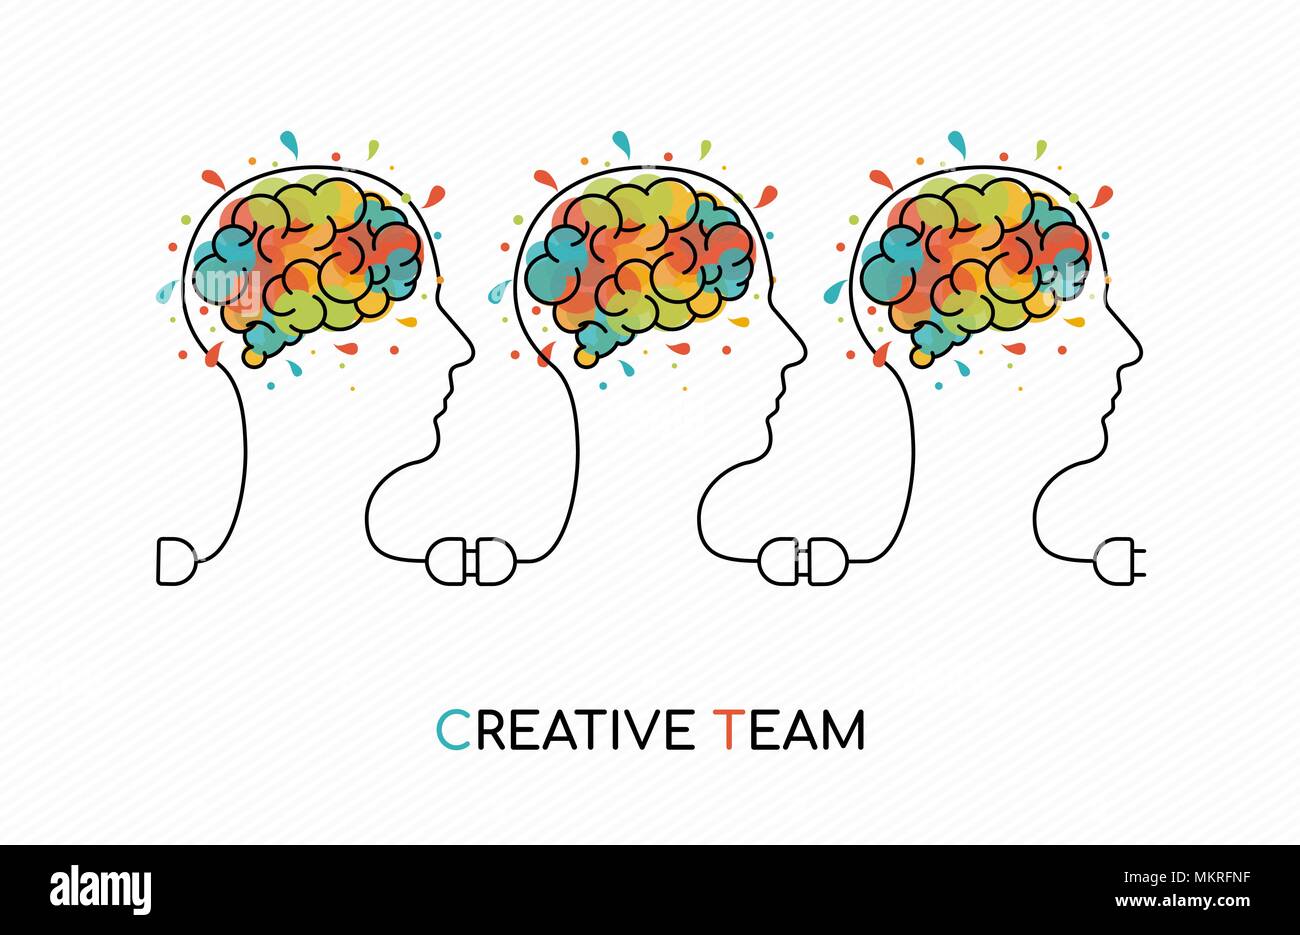 Kreative Teamarbeit Grobkonzept stil Abbildung mit Menschen Team als Power Kabel und farbenfrohe Kunst splash menschliche Gehirn. EPS 10 Vektor. Stock Vektor